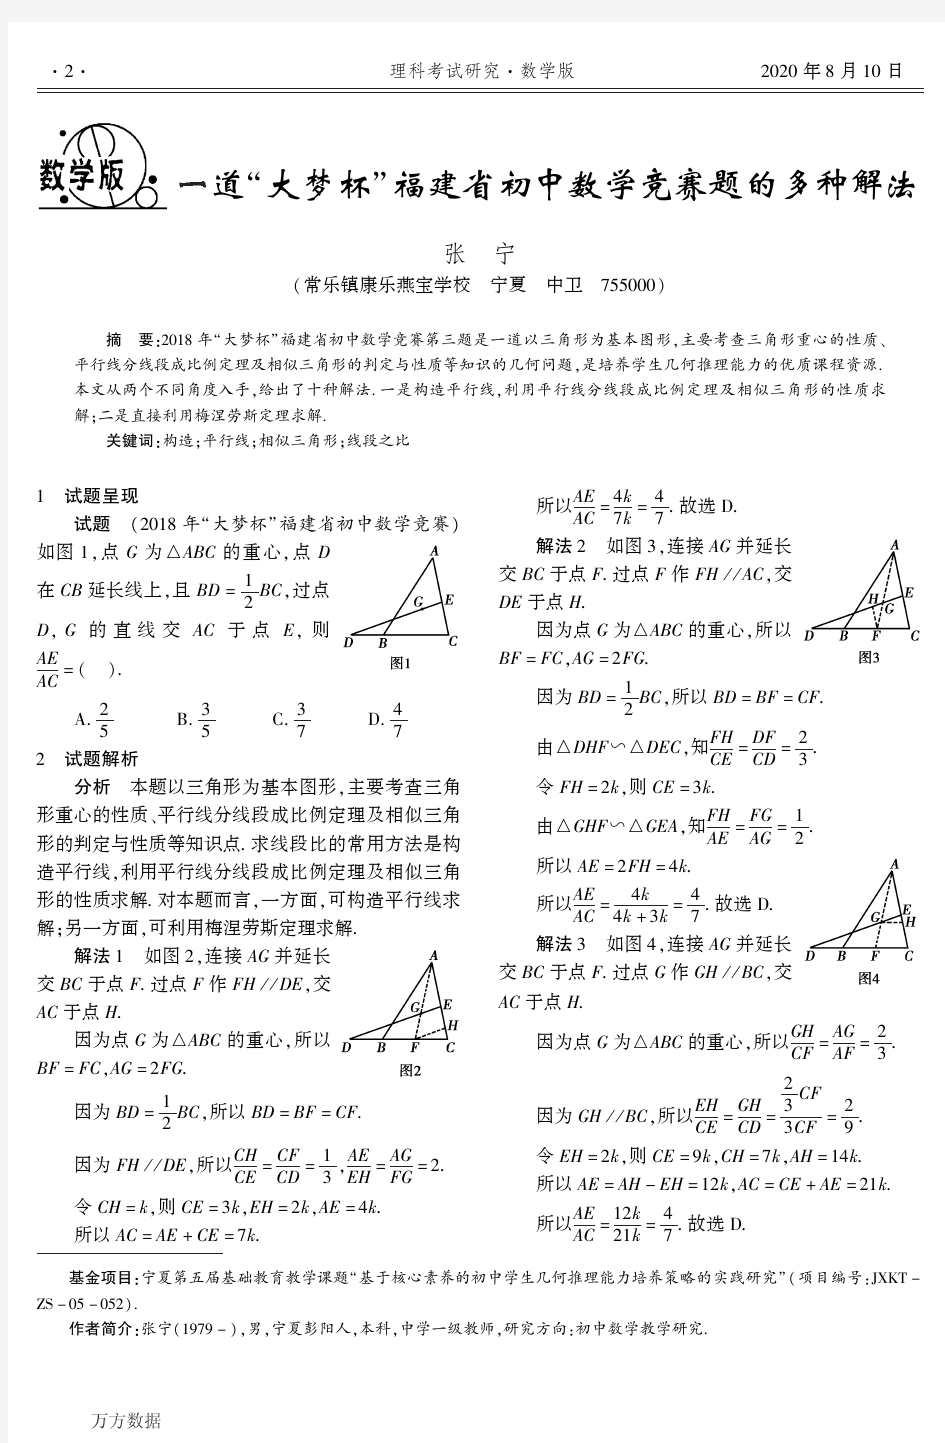 福建省初中数学竞赛题的多种解法